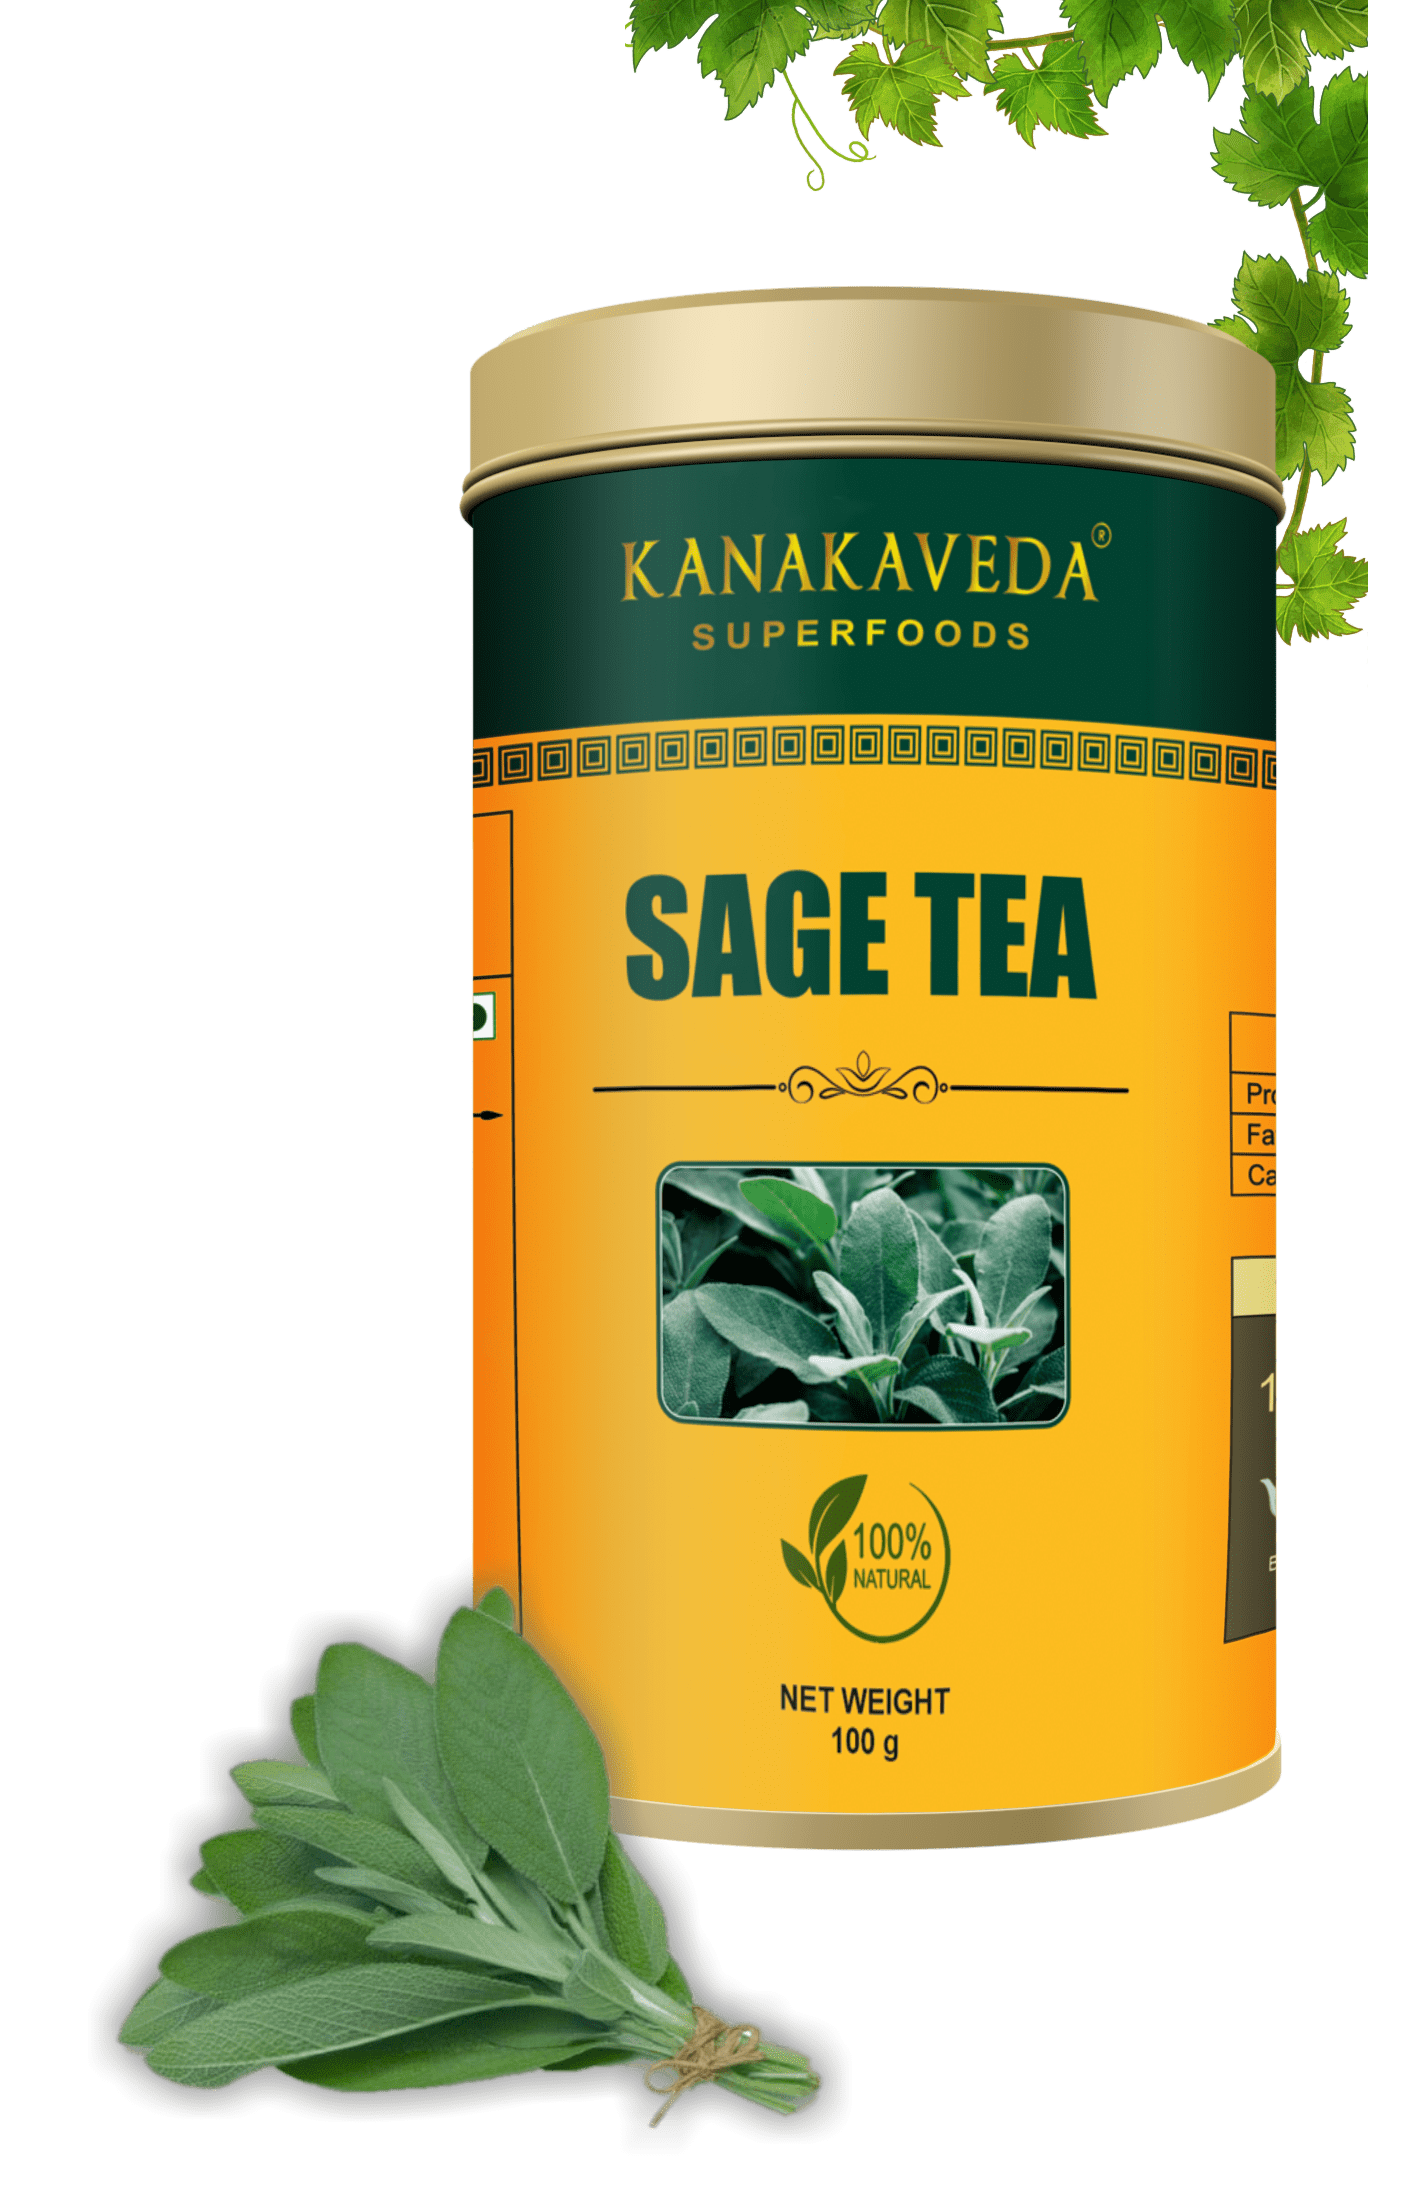 SAGE TEA - KANAKAVEDA